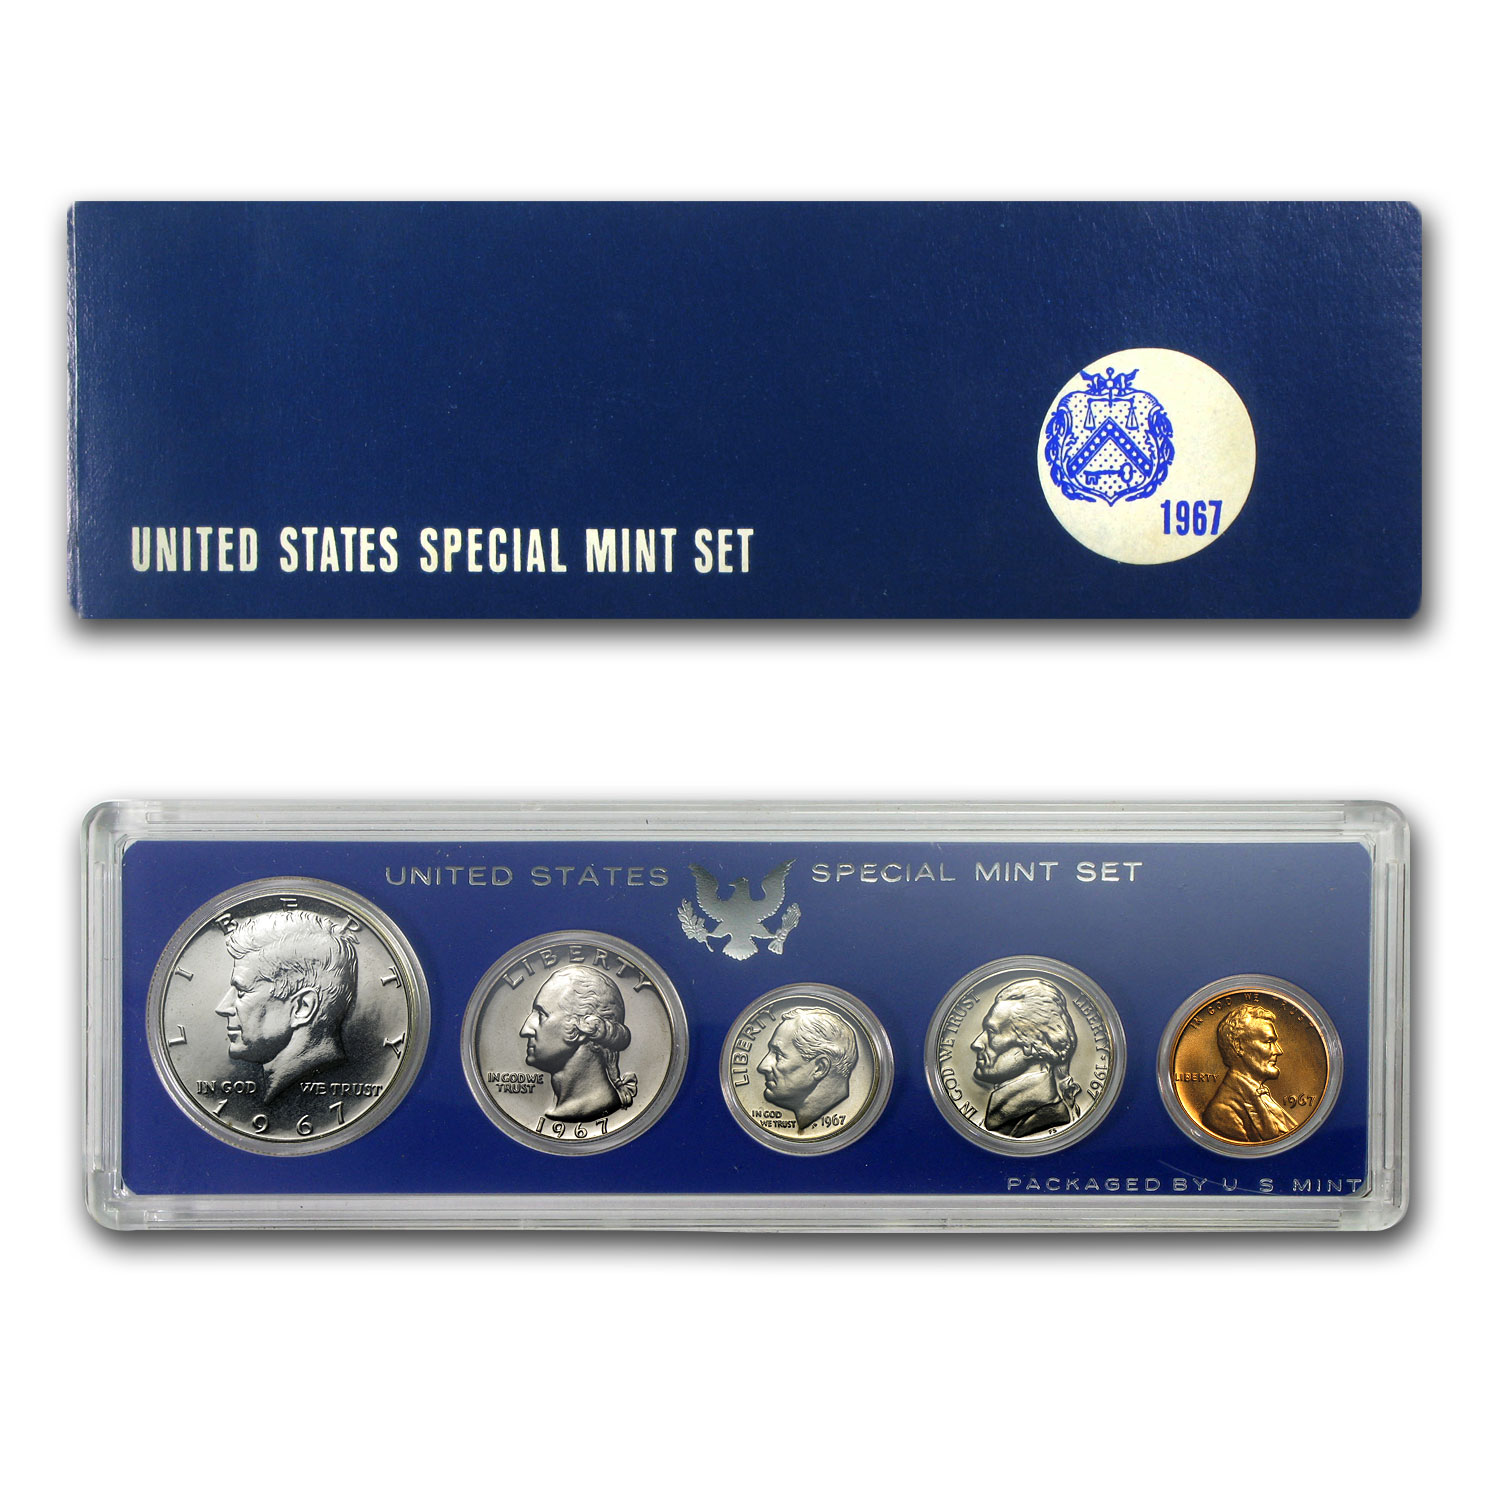 2"x 6" U.S SPECIAL MINT SET 1967 COIN DISPLAY W/FREE SHP! CAPITAL PLASTICS 